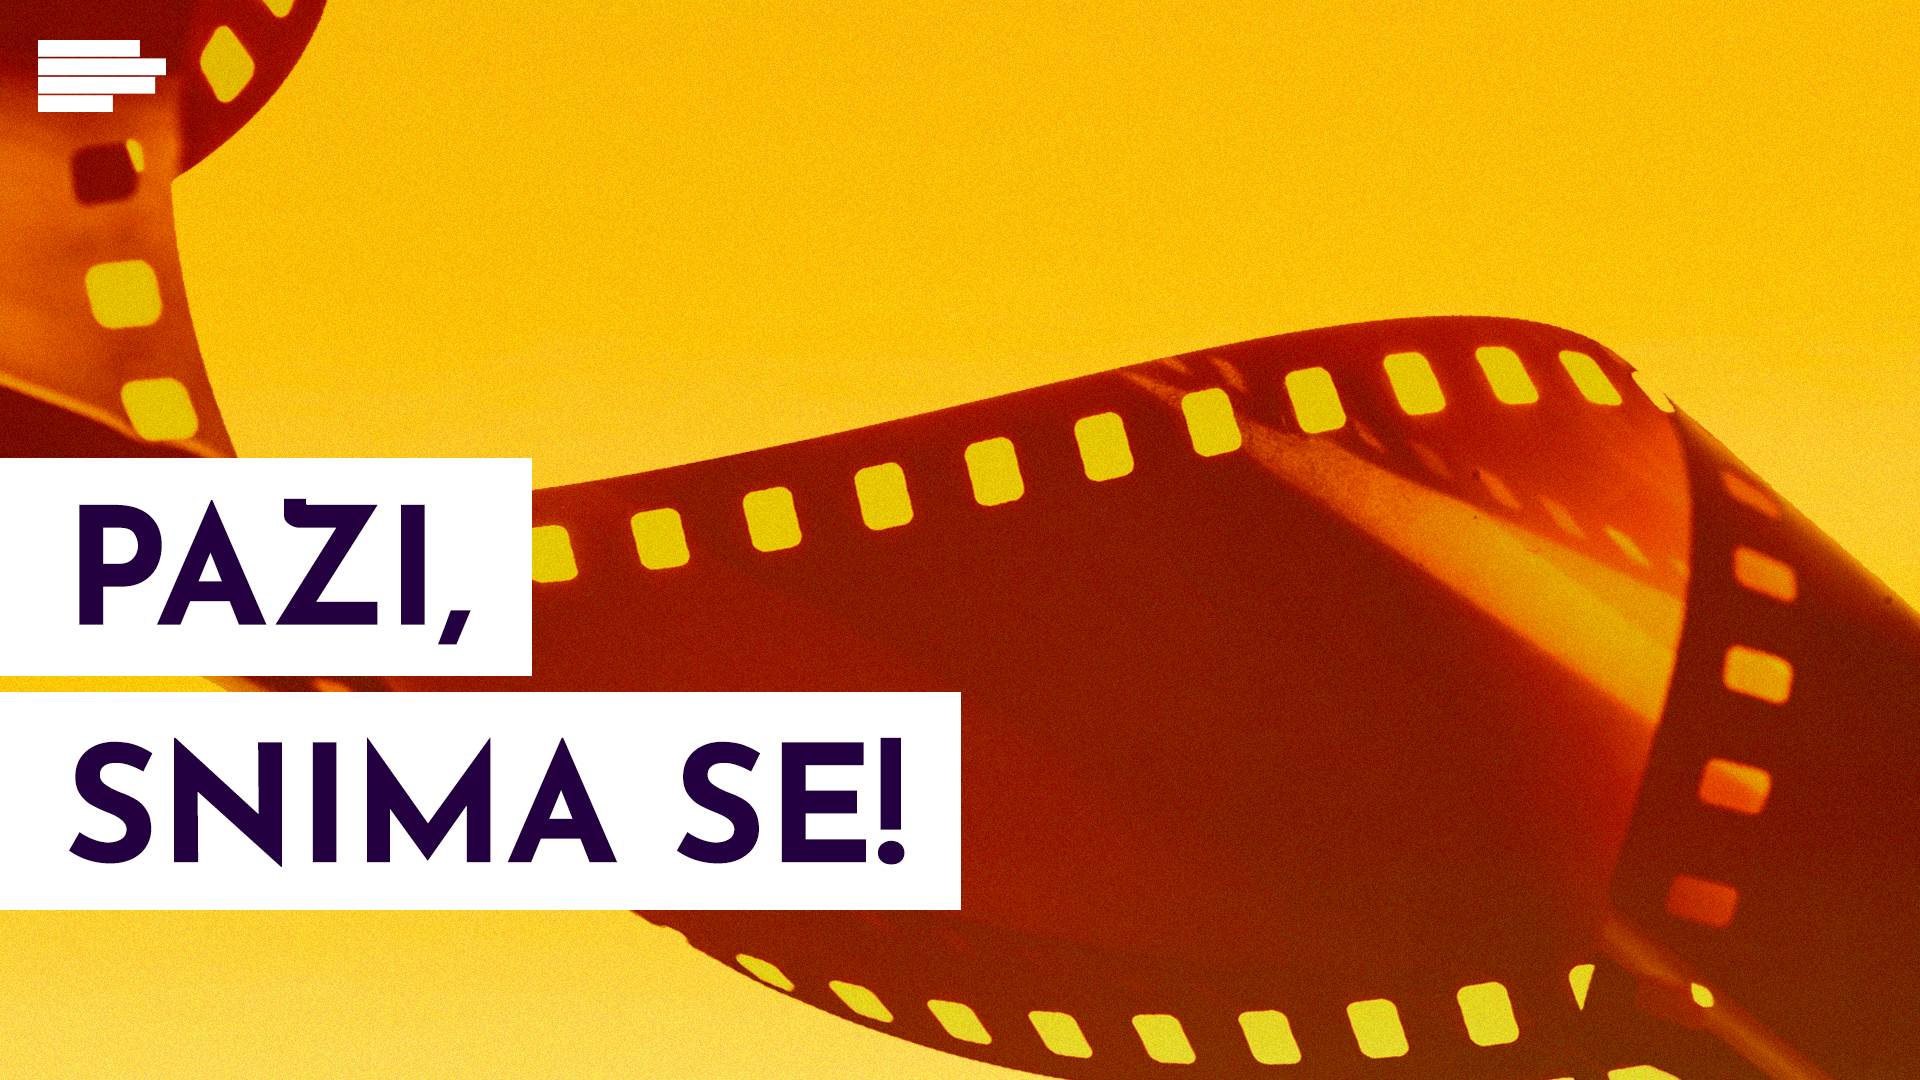  Srbija ulaže 50 miliona u obnovu filmskog studija  